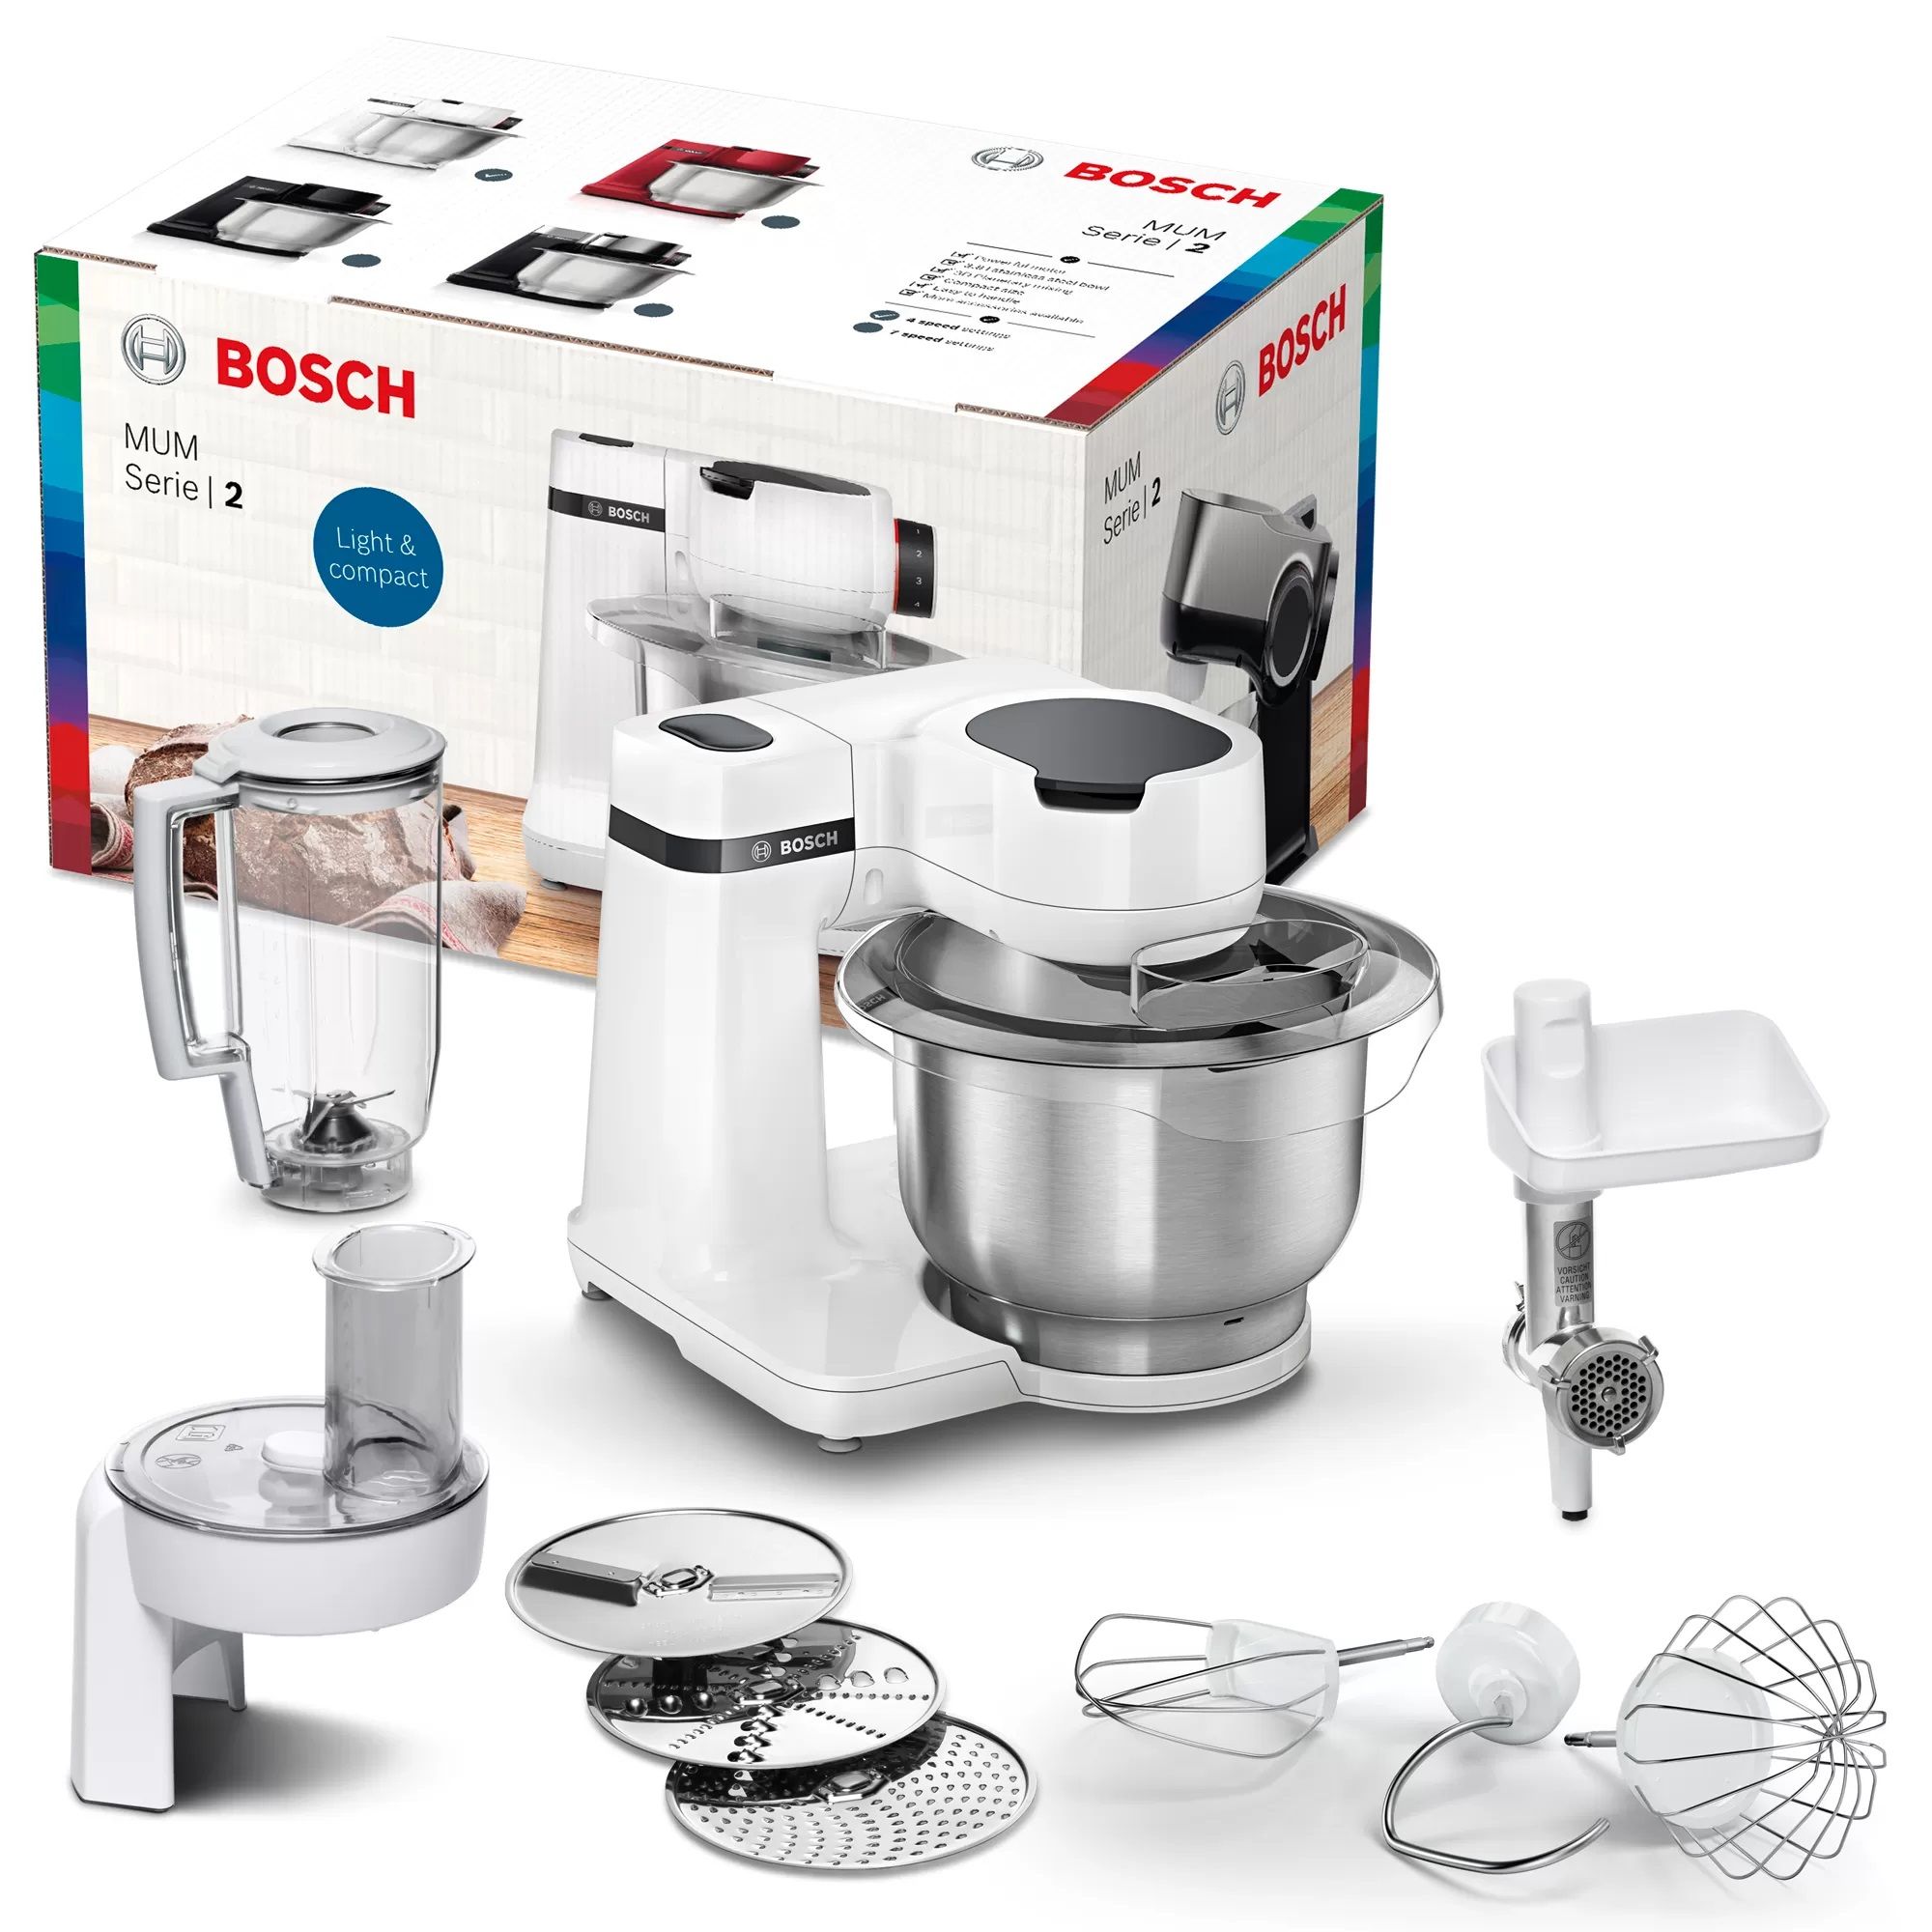 Кухонная машина Bosch mum serie 2